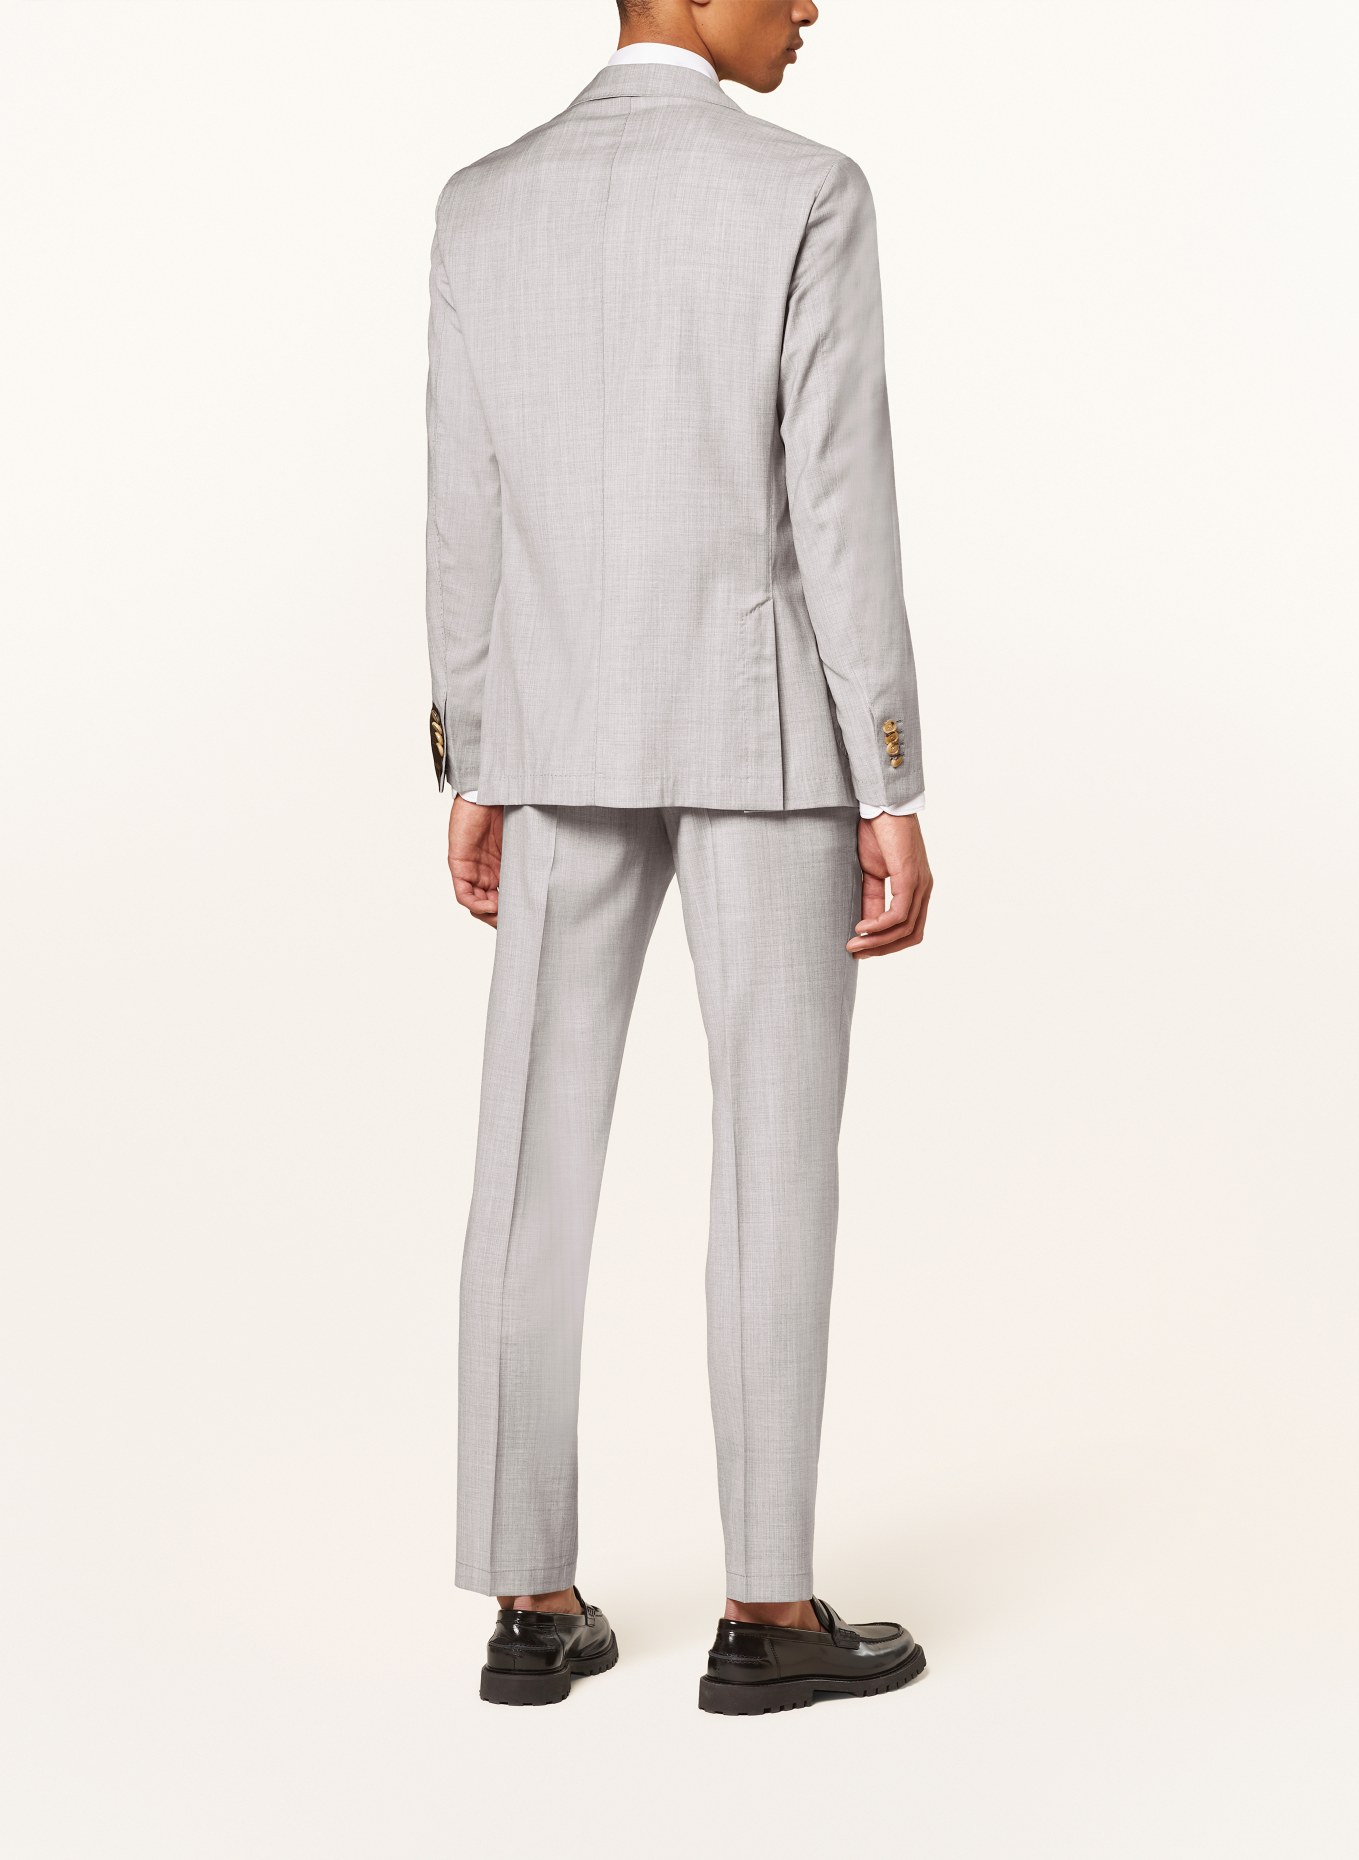 windsor. Suit jacket TRAVEL shaped Fit, Color: 035 Medium Grey                035 (Image 3)